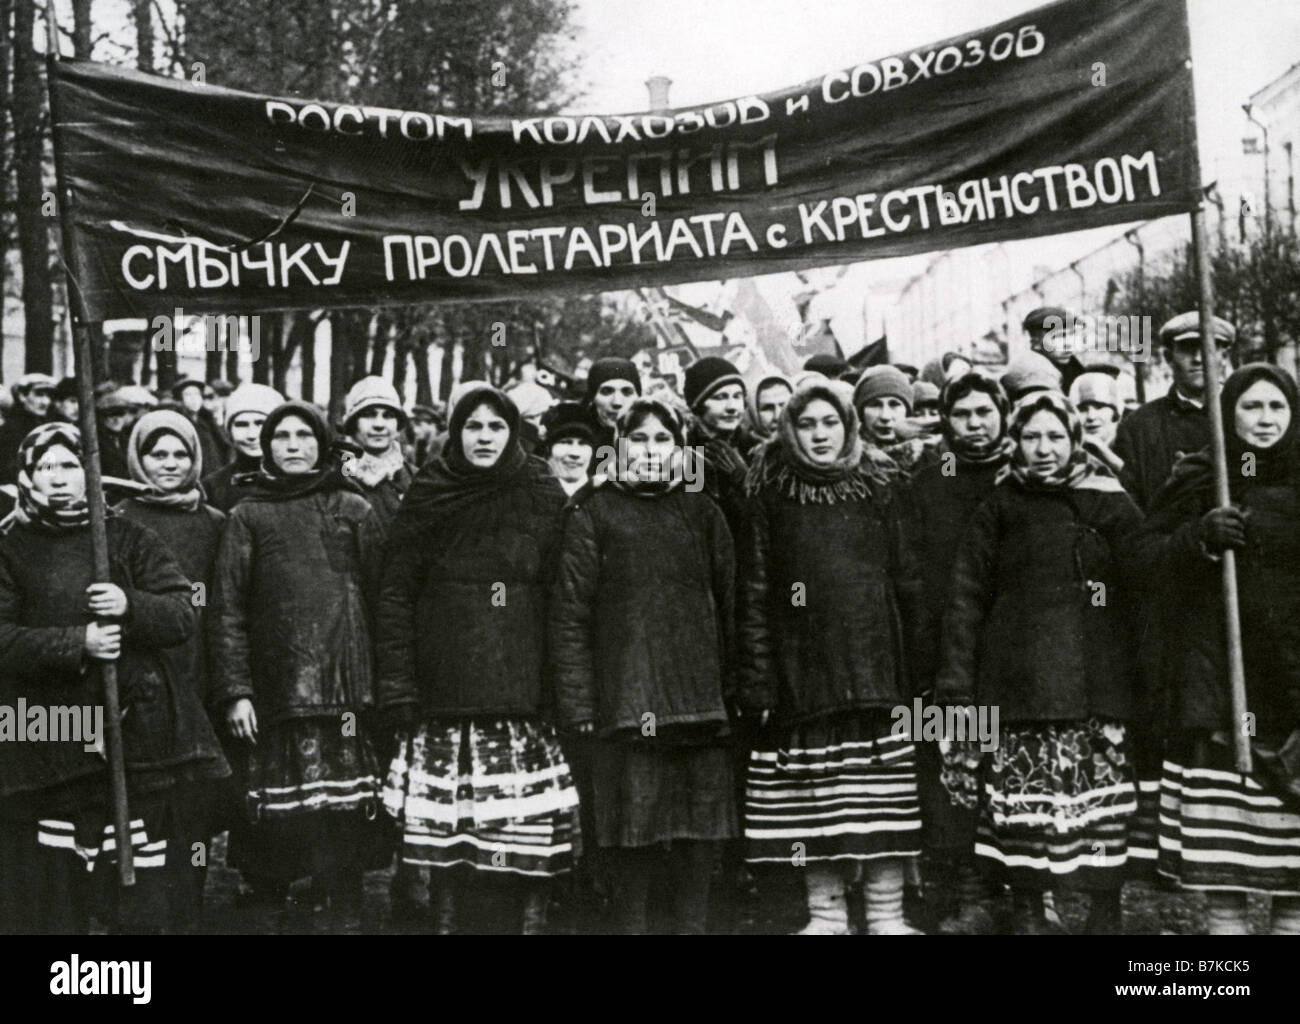 La Russie soviétique dans les années 1930 les femmes russes à l'appui de démonstration de la suppression des différences de classe entre les travailleurs d'une paysanne Banque D'Images